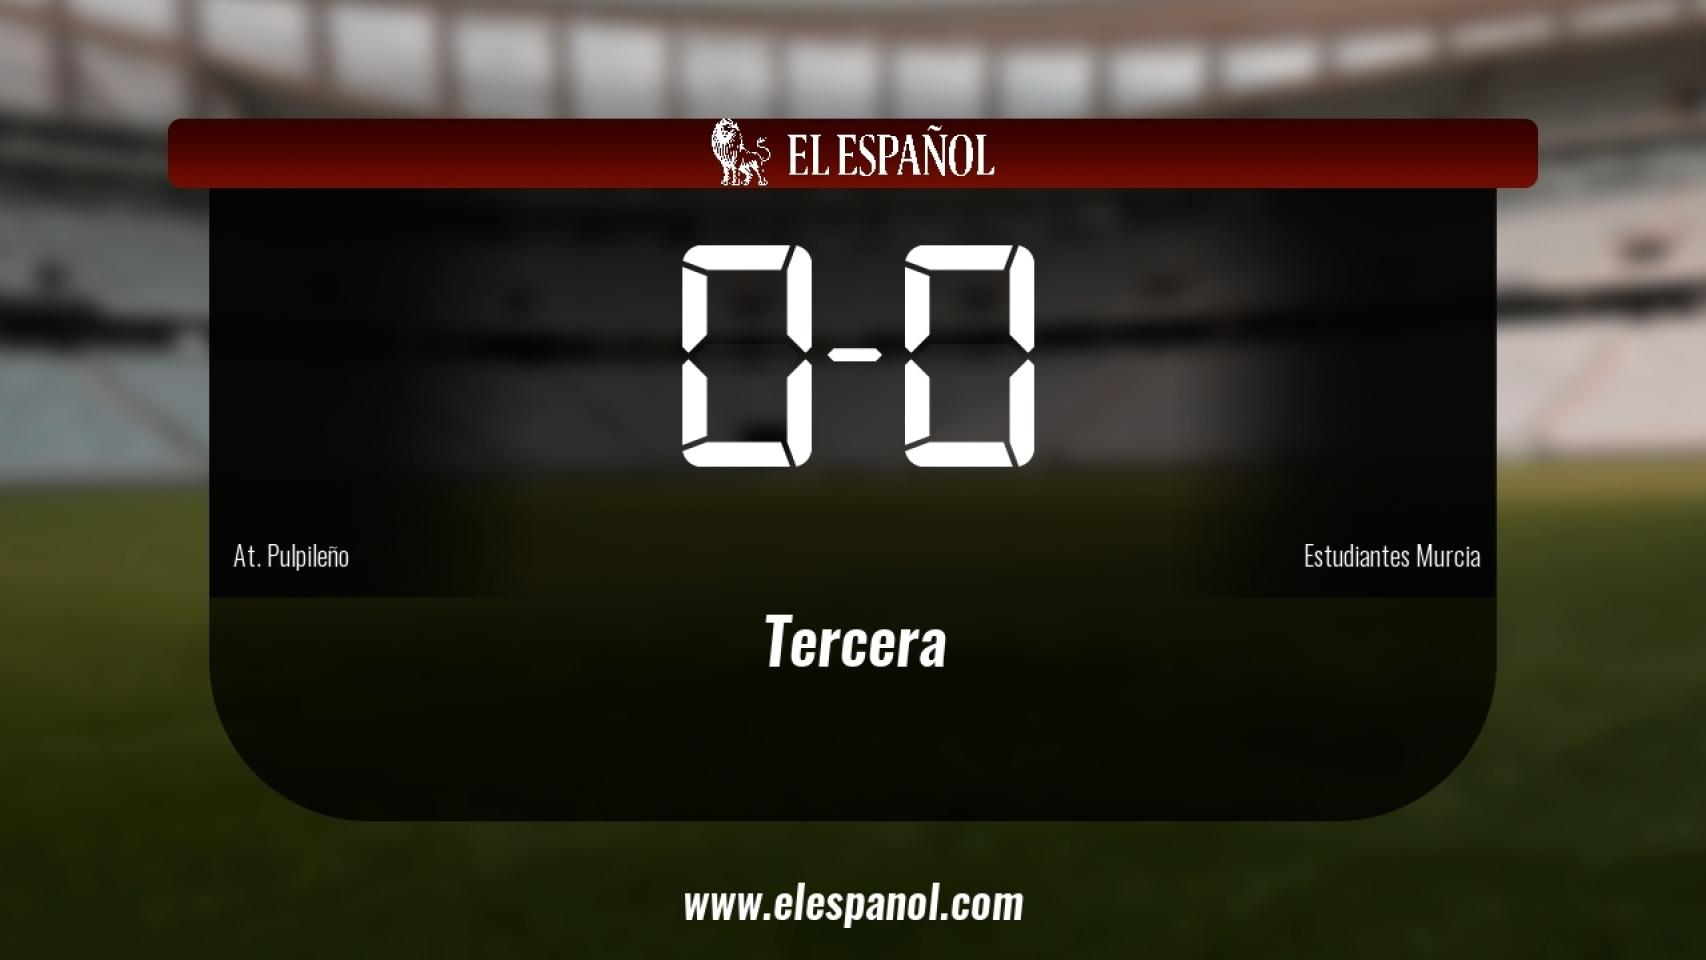 Reparto de puntos entre el At. Pulpileño y el Estudiantes Murcia, el marcador final fue 0-0